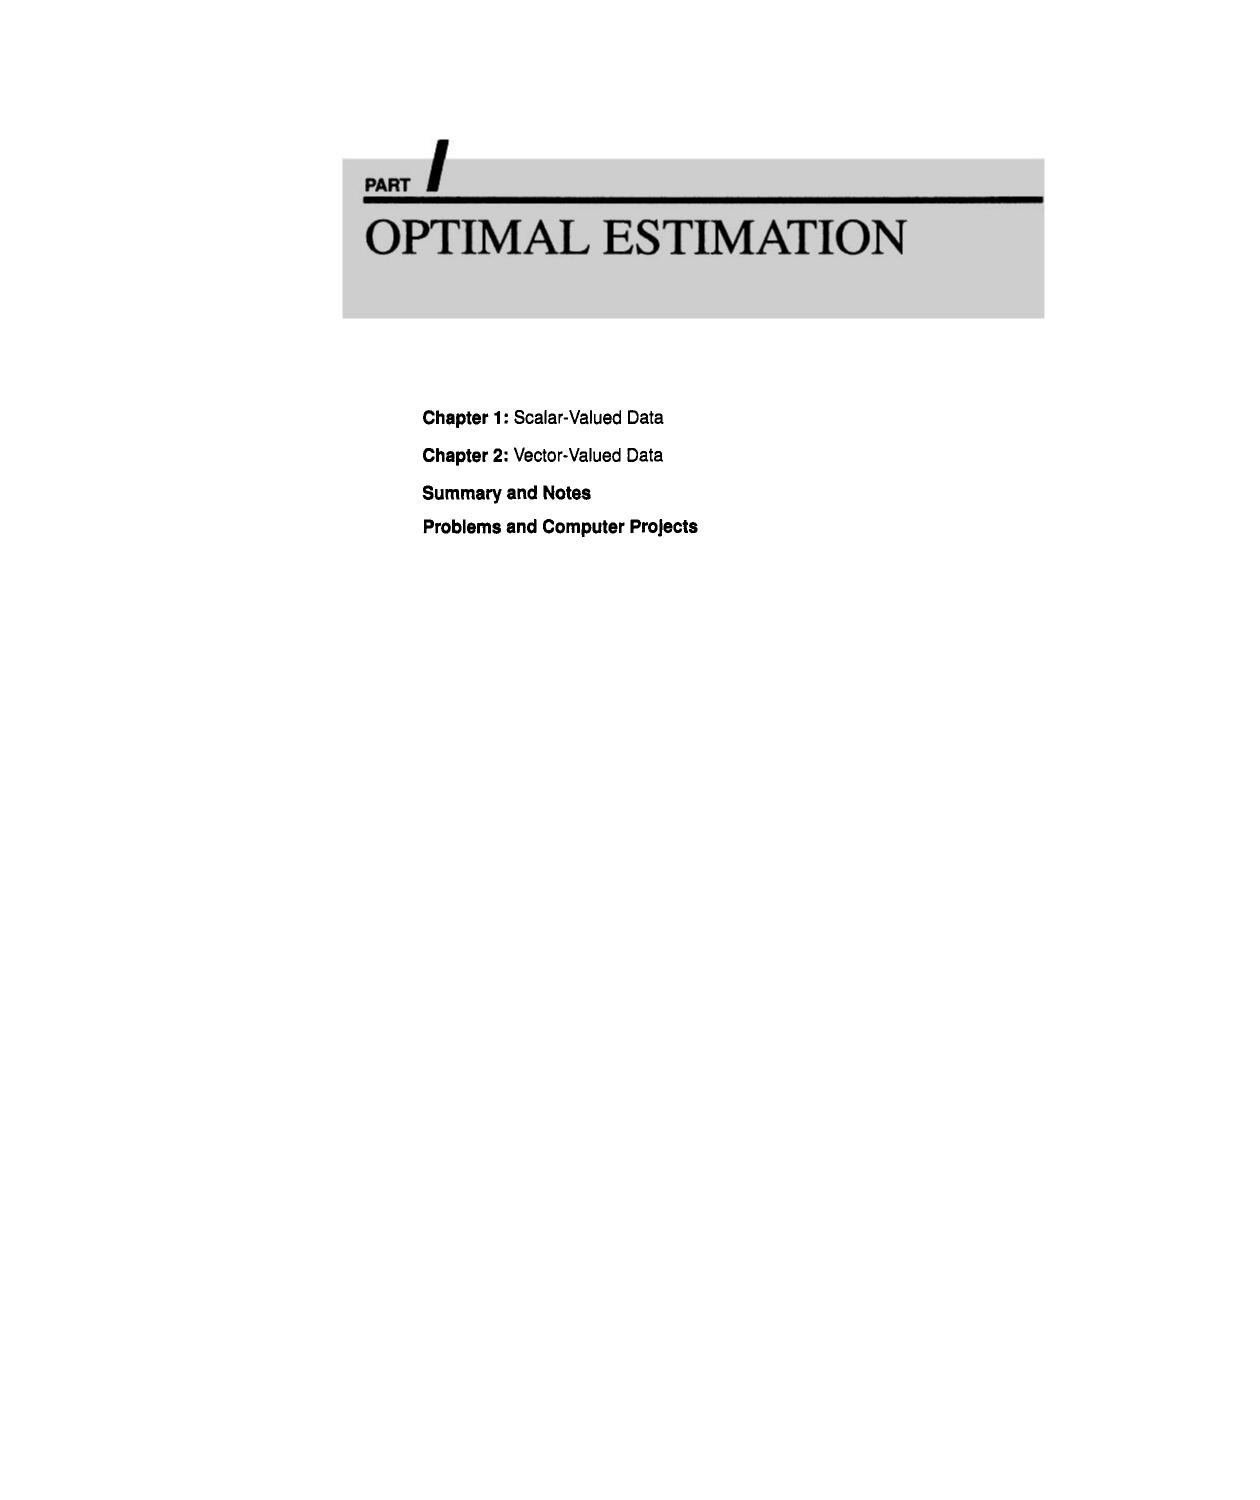 PART I: OPTIMAL ESTIMATION